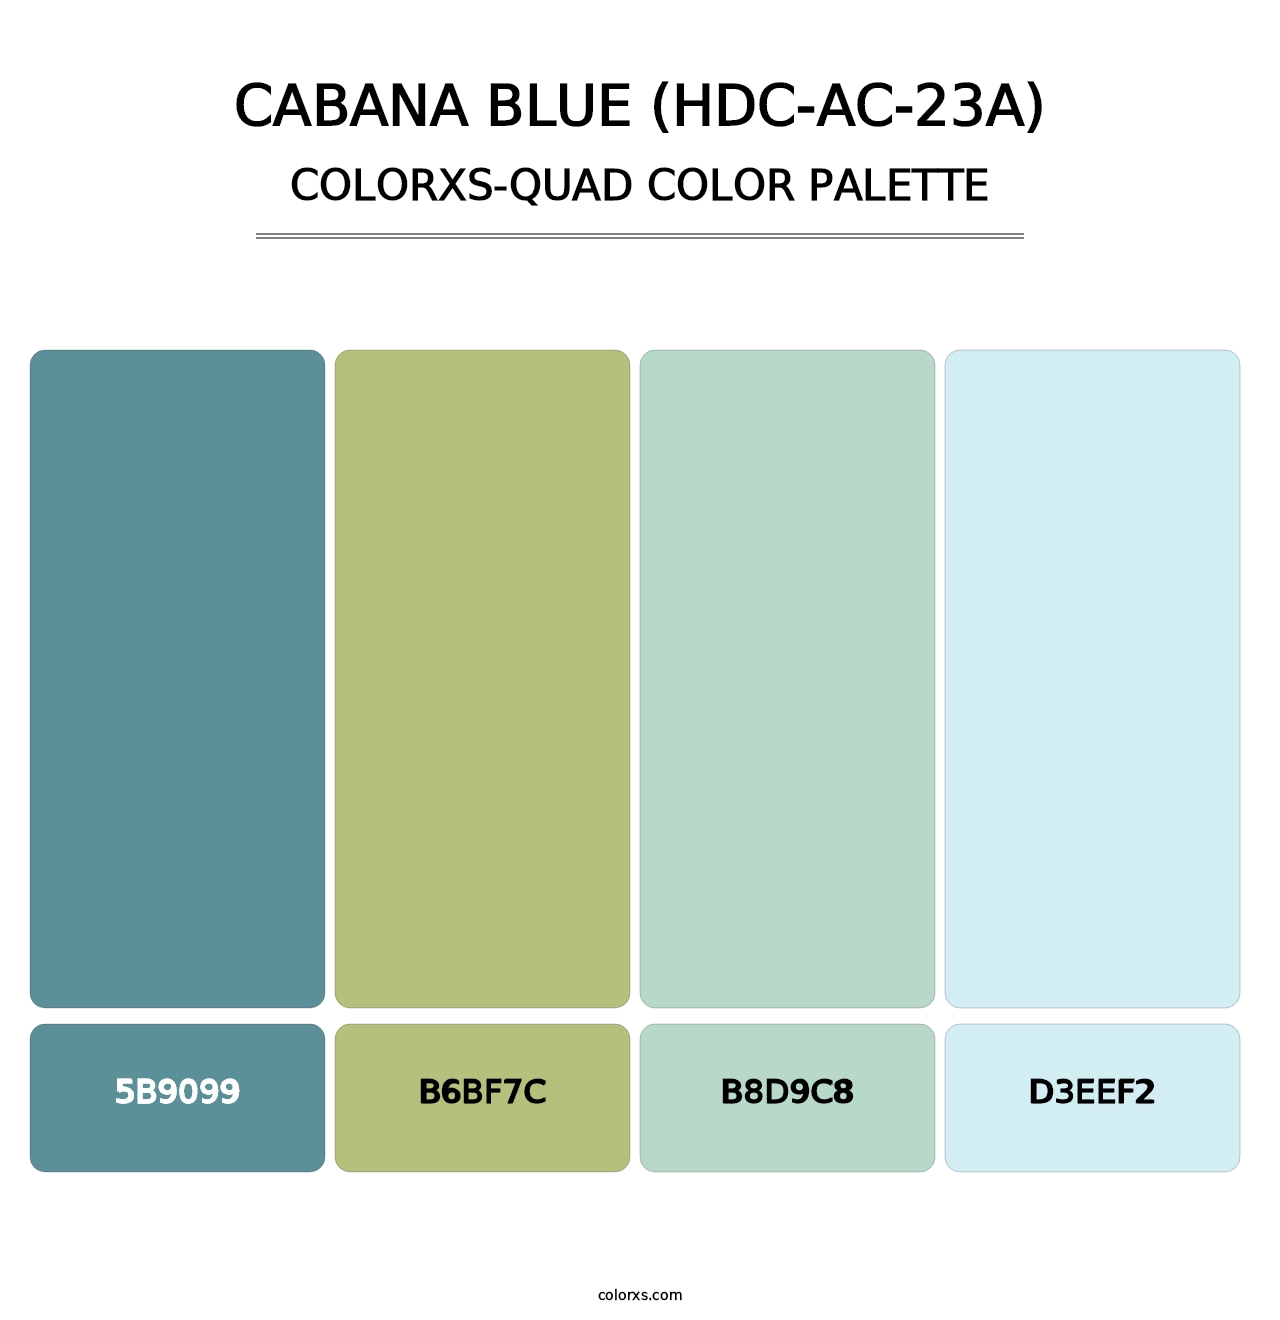 Cabana Blue (HDC-AC-23A) - Colorxs Quad Palette